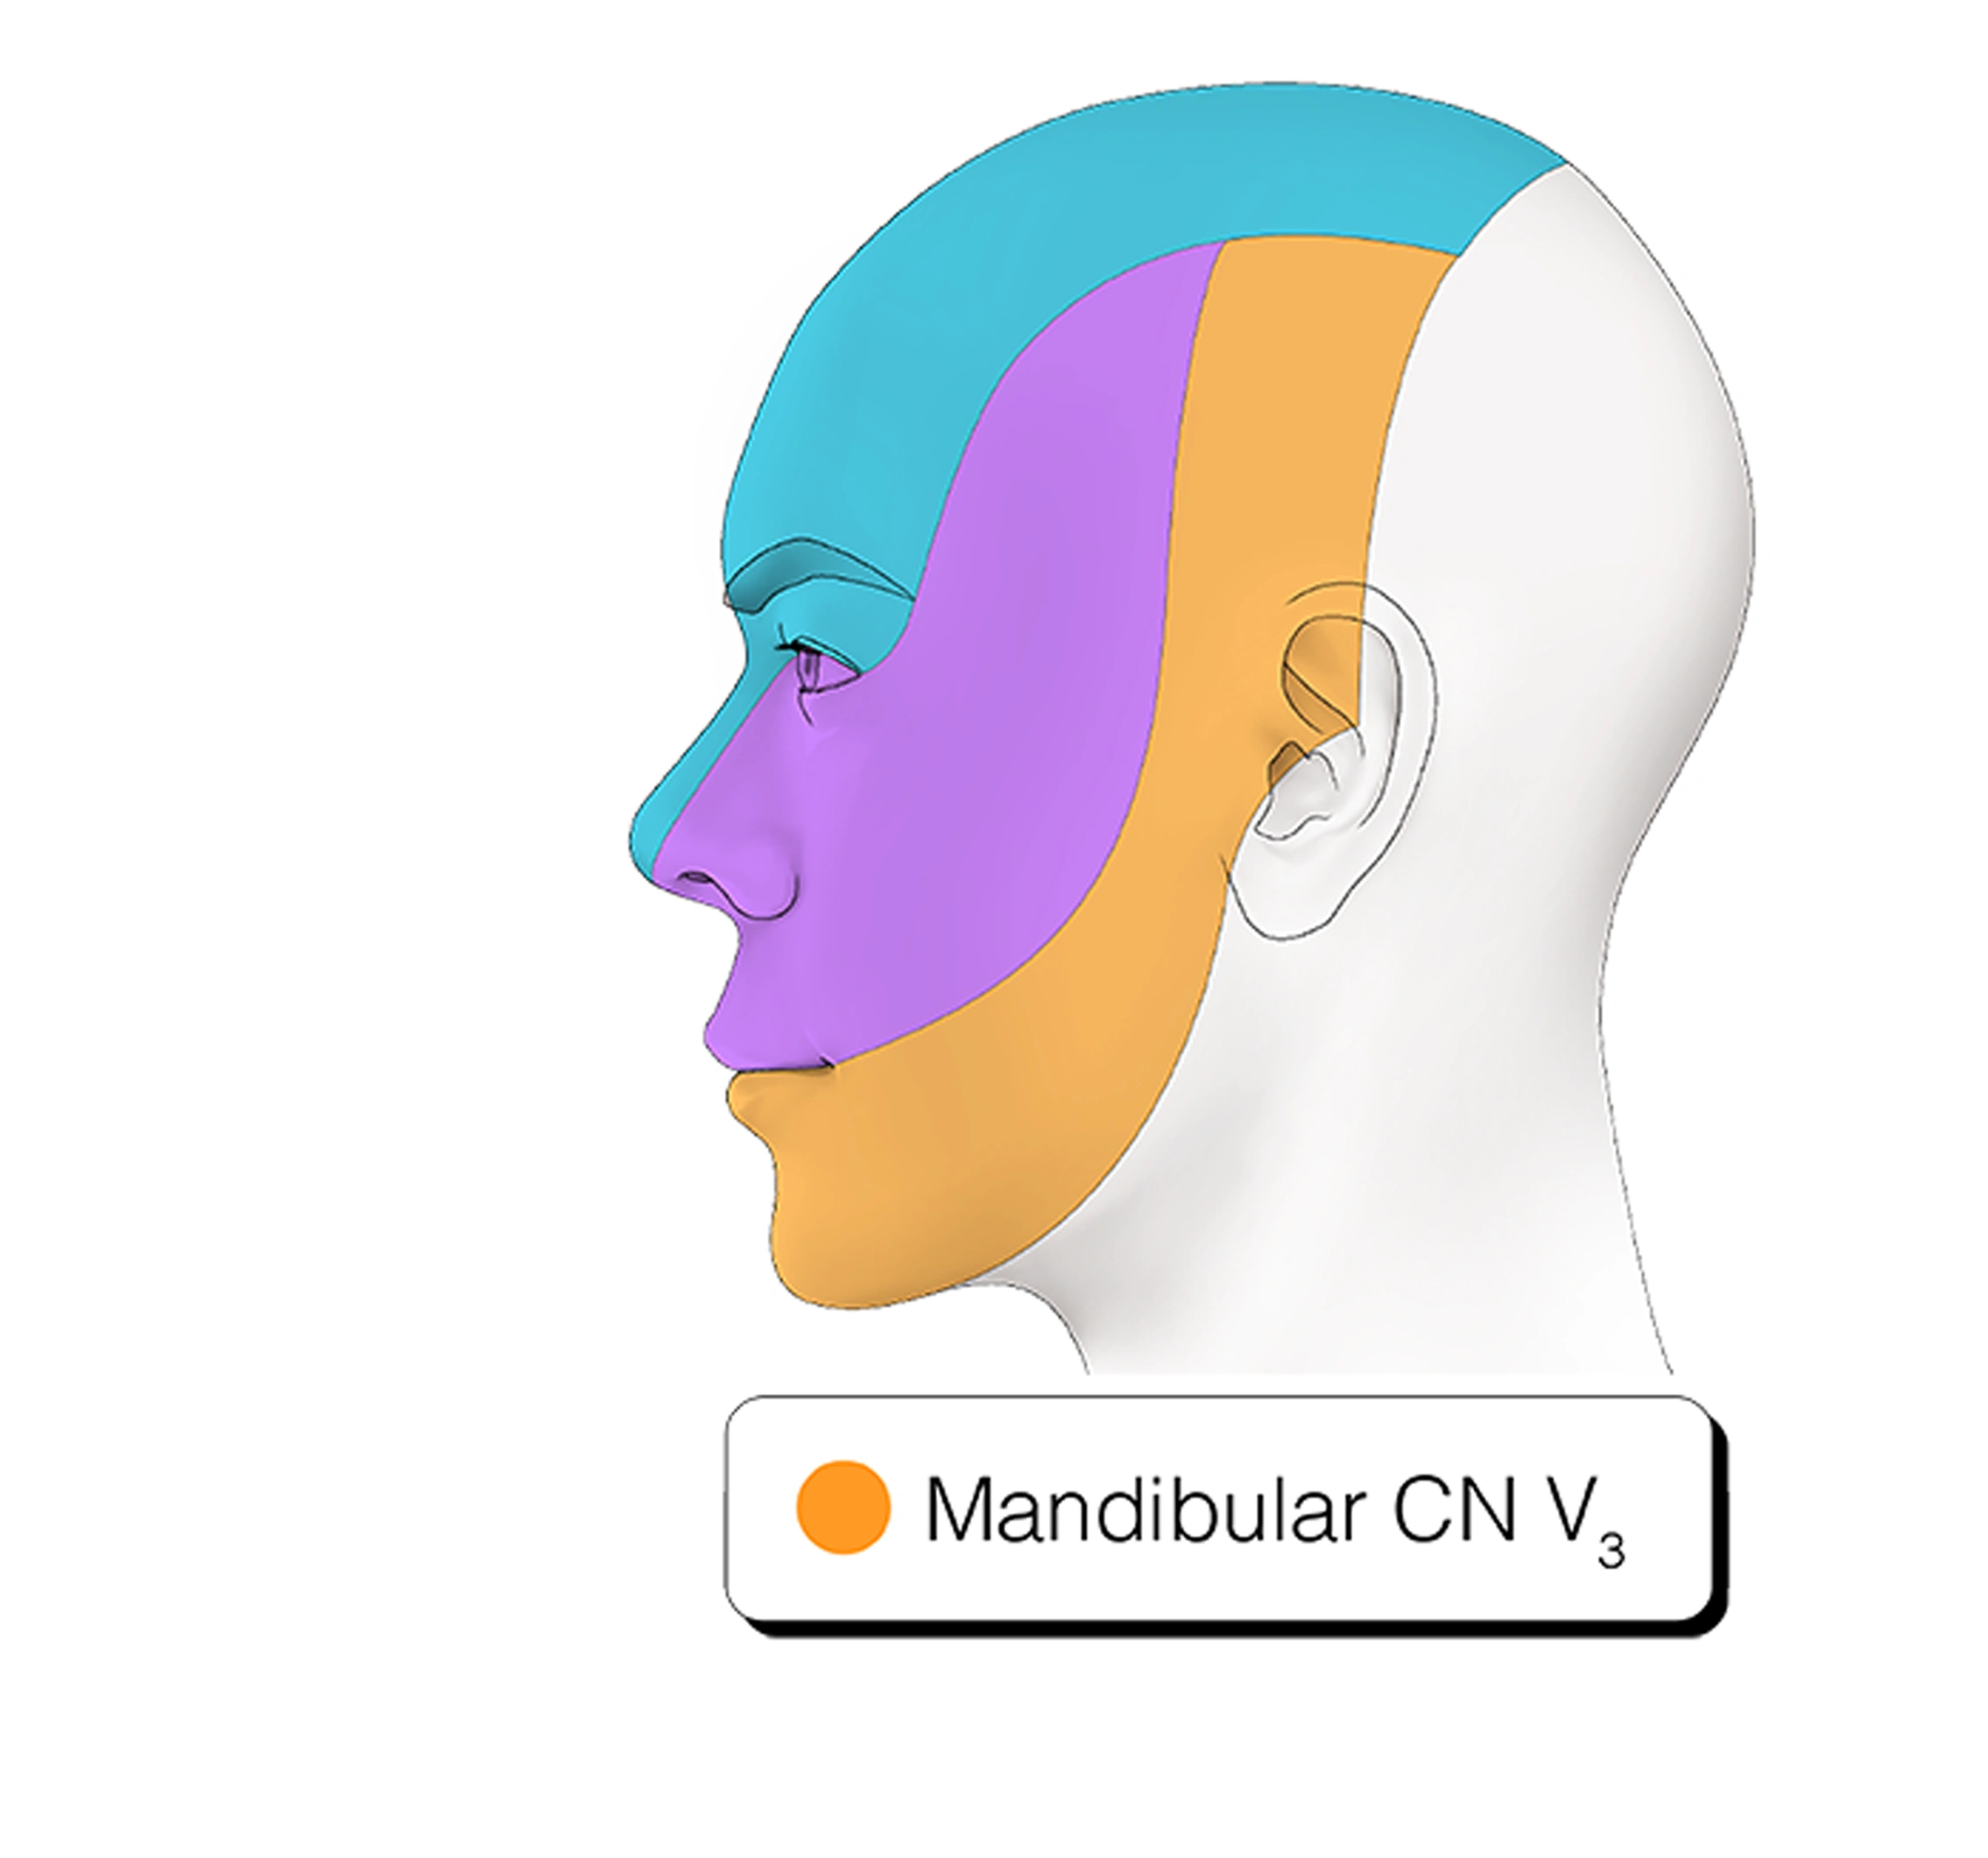 Figure 20. Cranial Nerve V3 - Mandibular Nerve